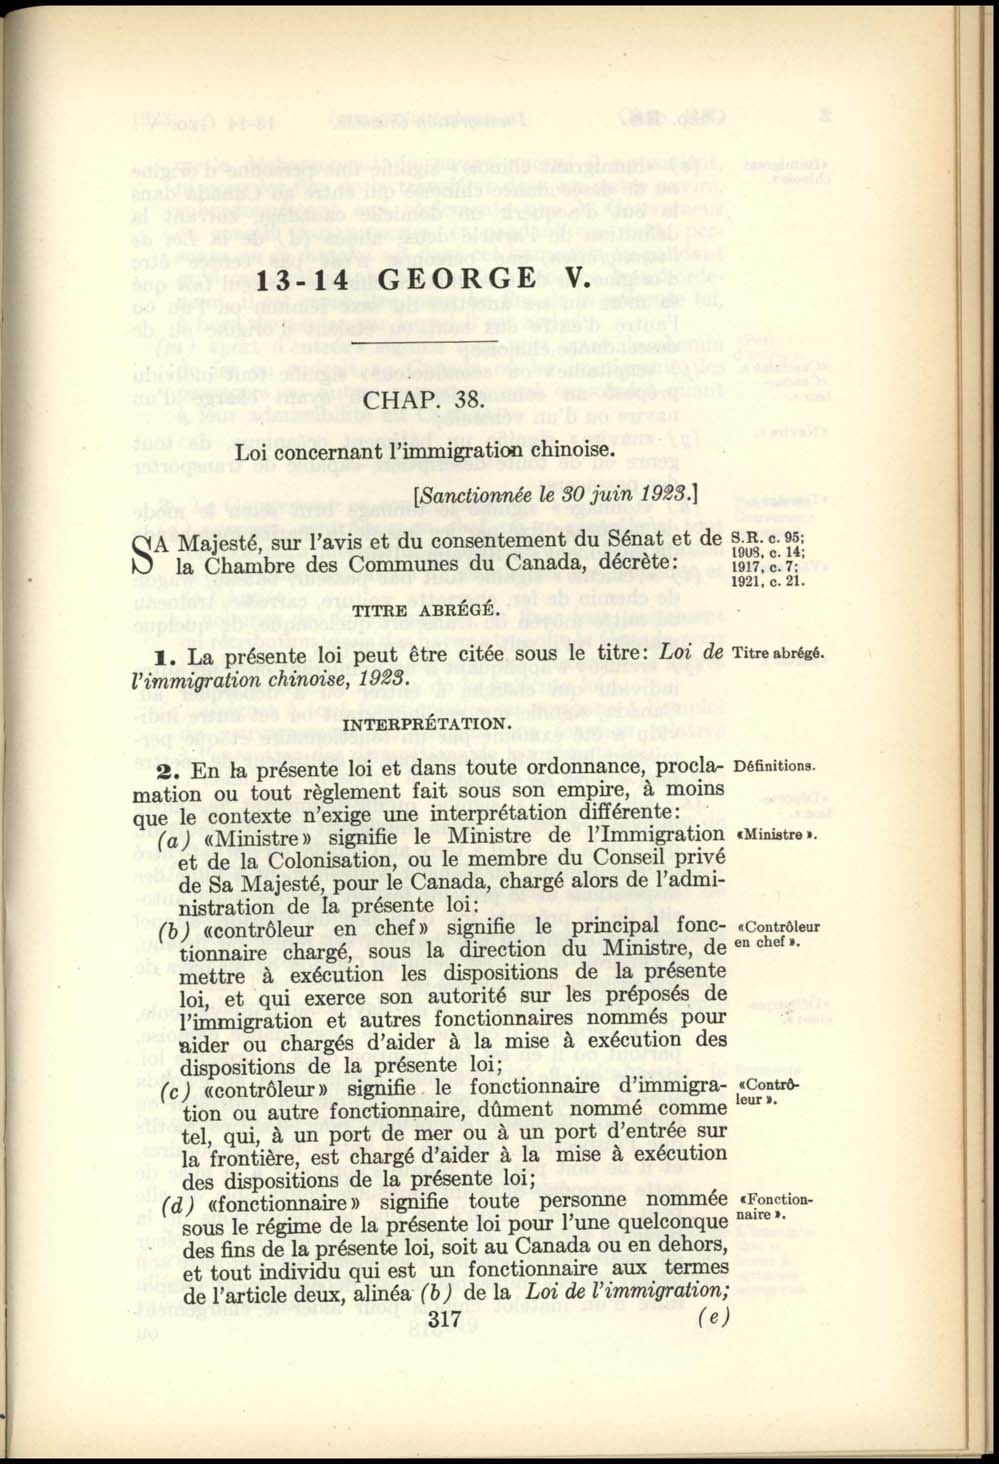 Chap. 38 Page 317 Loi de l’Immigration Chinoise, 1923